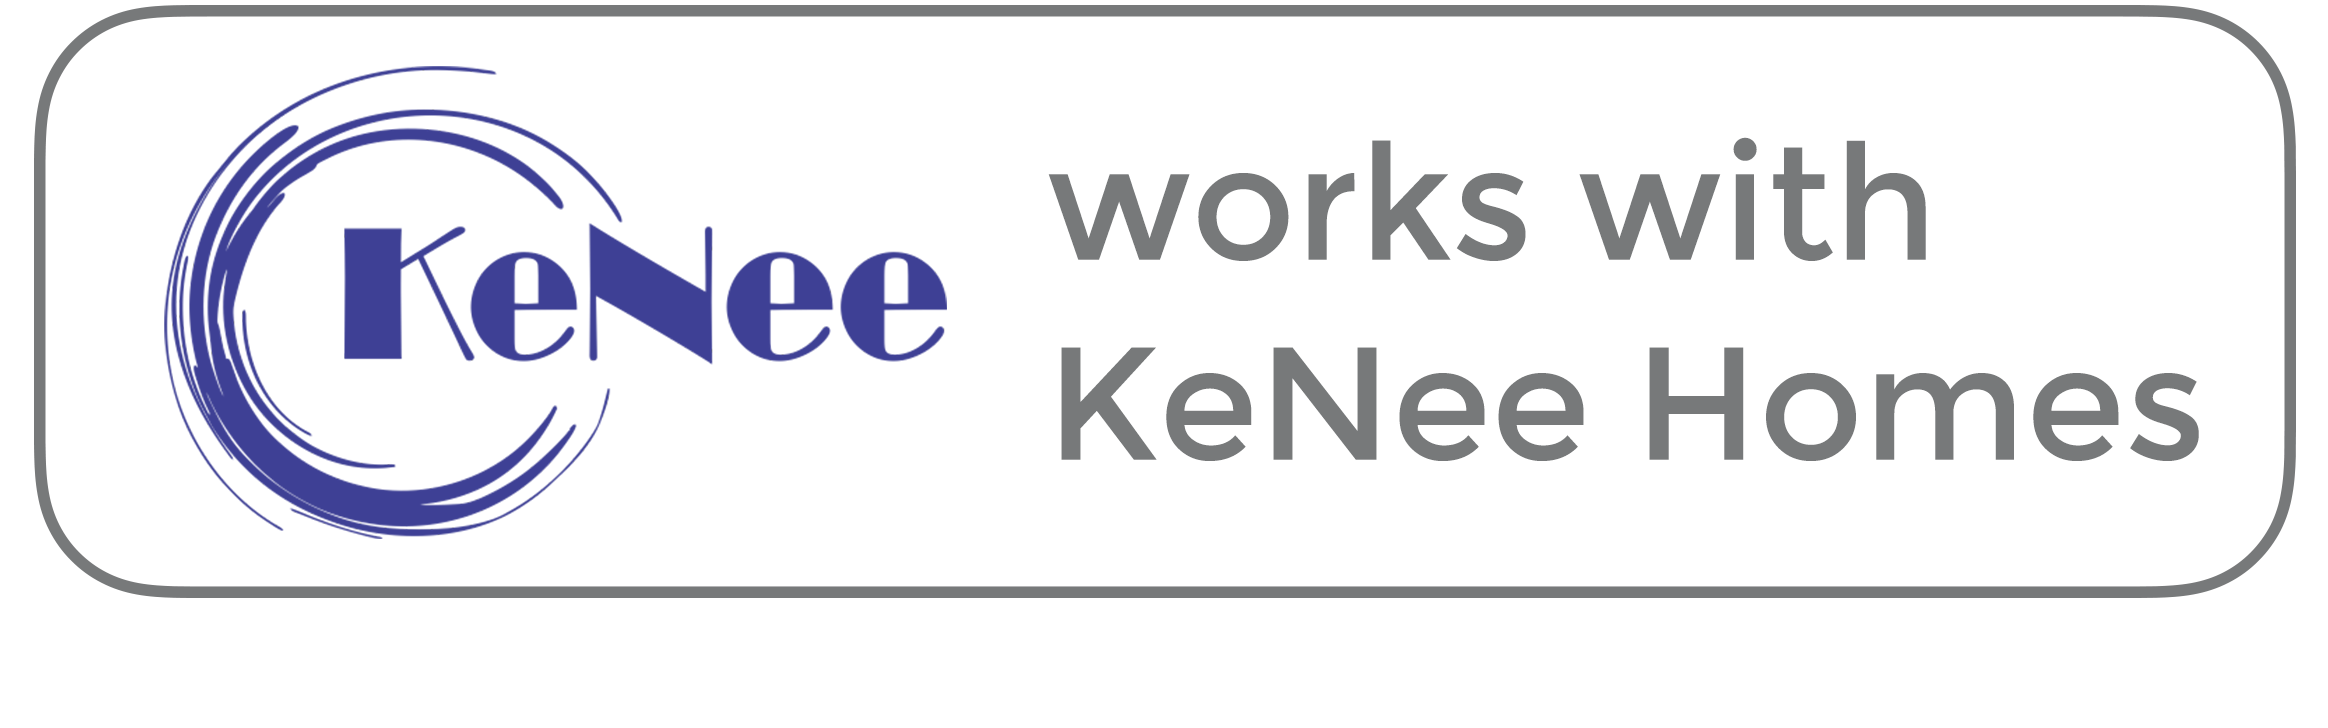 works with kenee homes